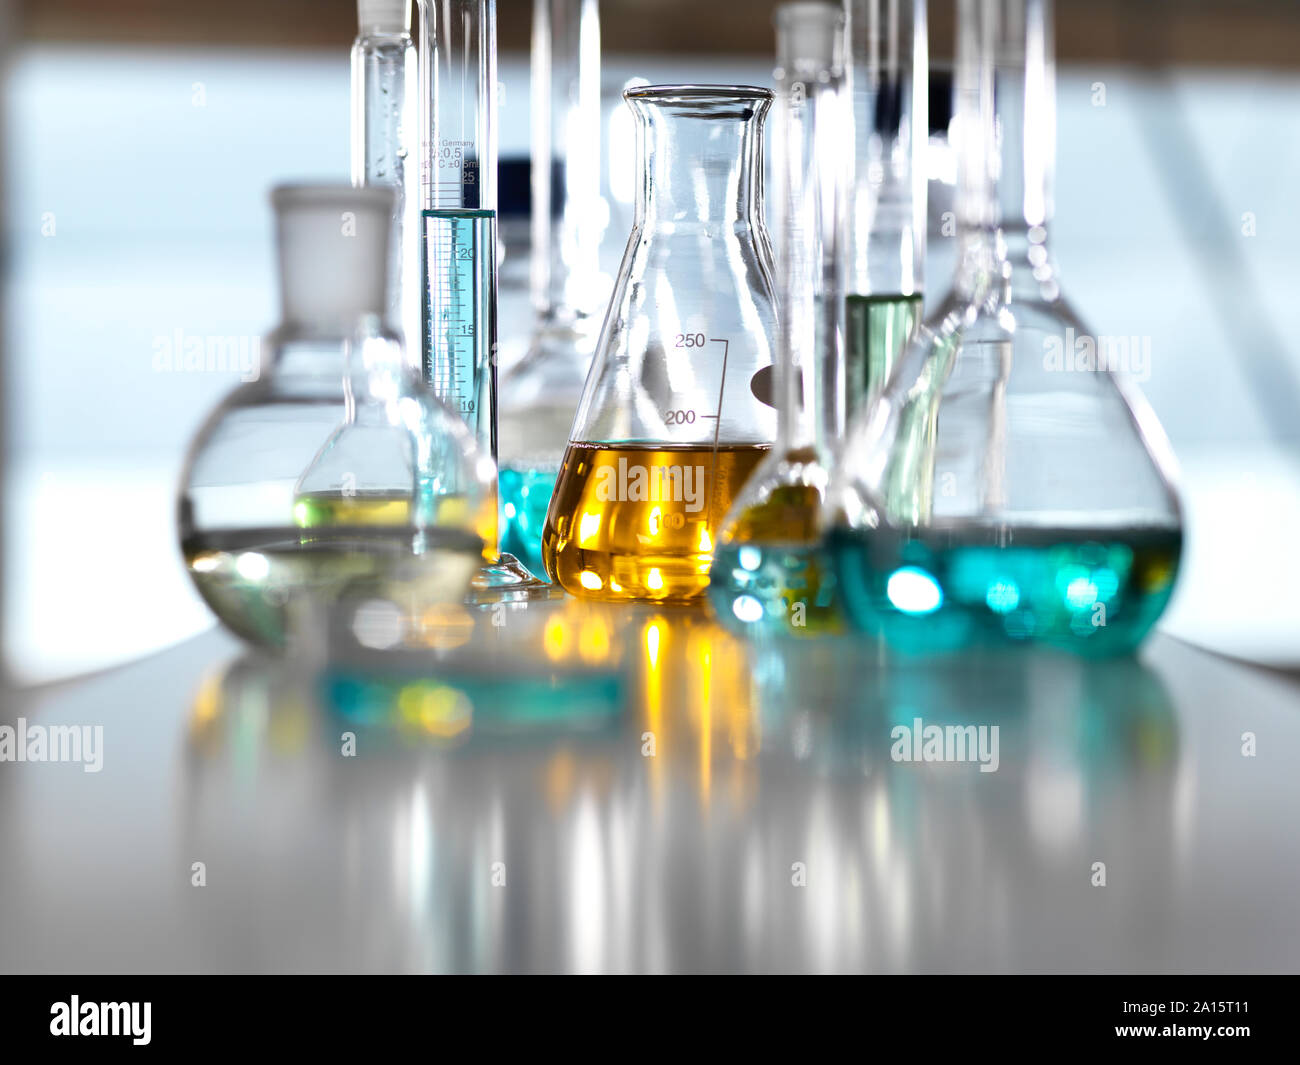 La recherche chimique, un éventail de formules chimiques mises au point dans le laboratoire de recherche en nouveaux produits Banque D'Images